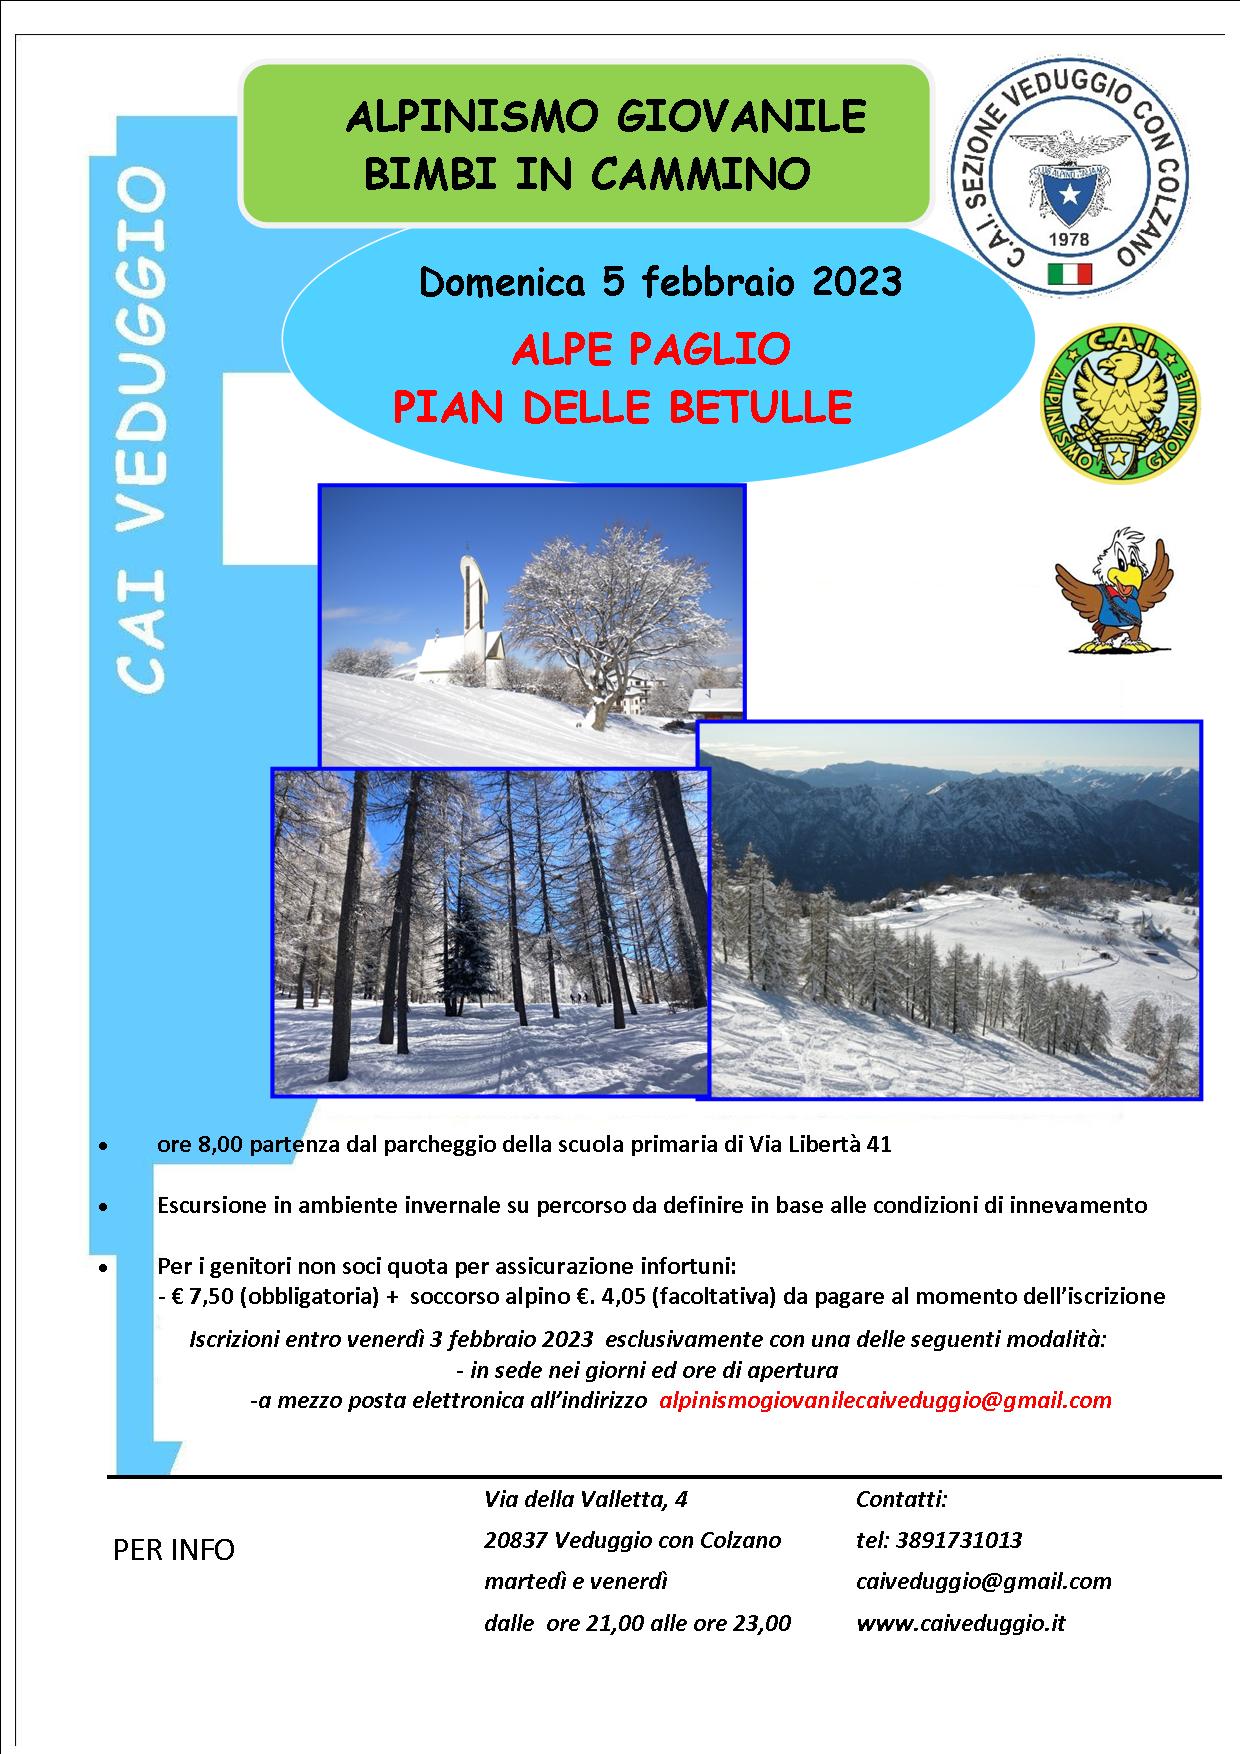 Domenica 5 febbraio 2023 – Alpe Paglio/Pian delle Betulle (Alpinismo giovanile e Bimbi in cammino)